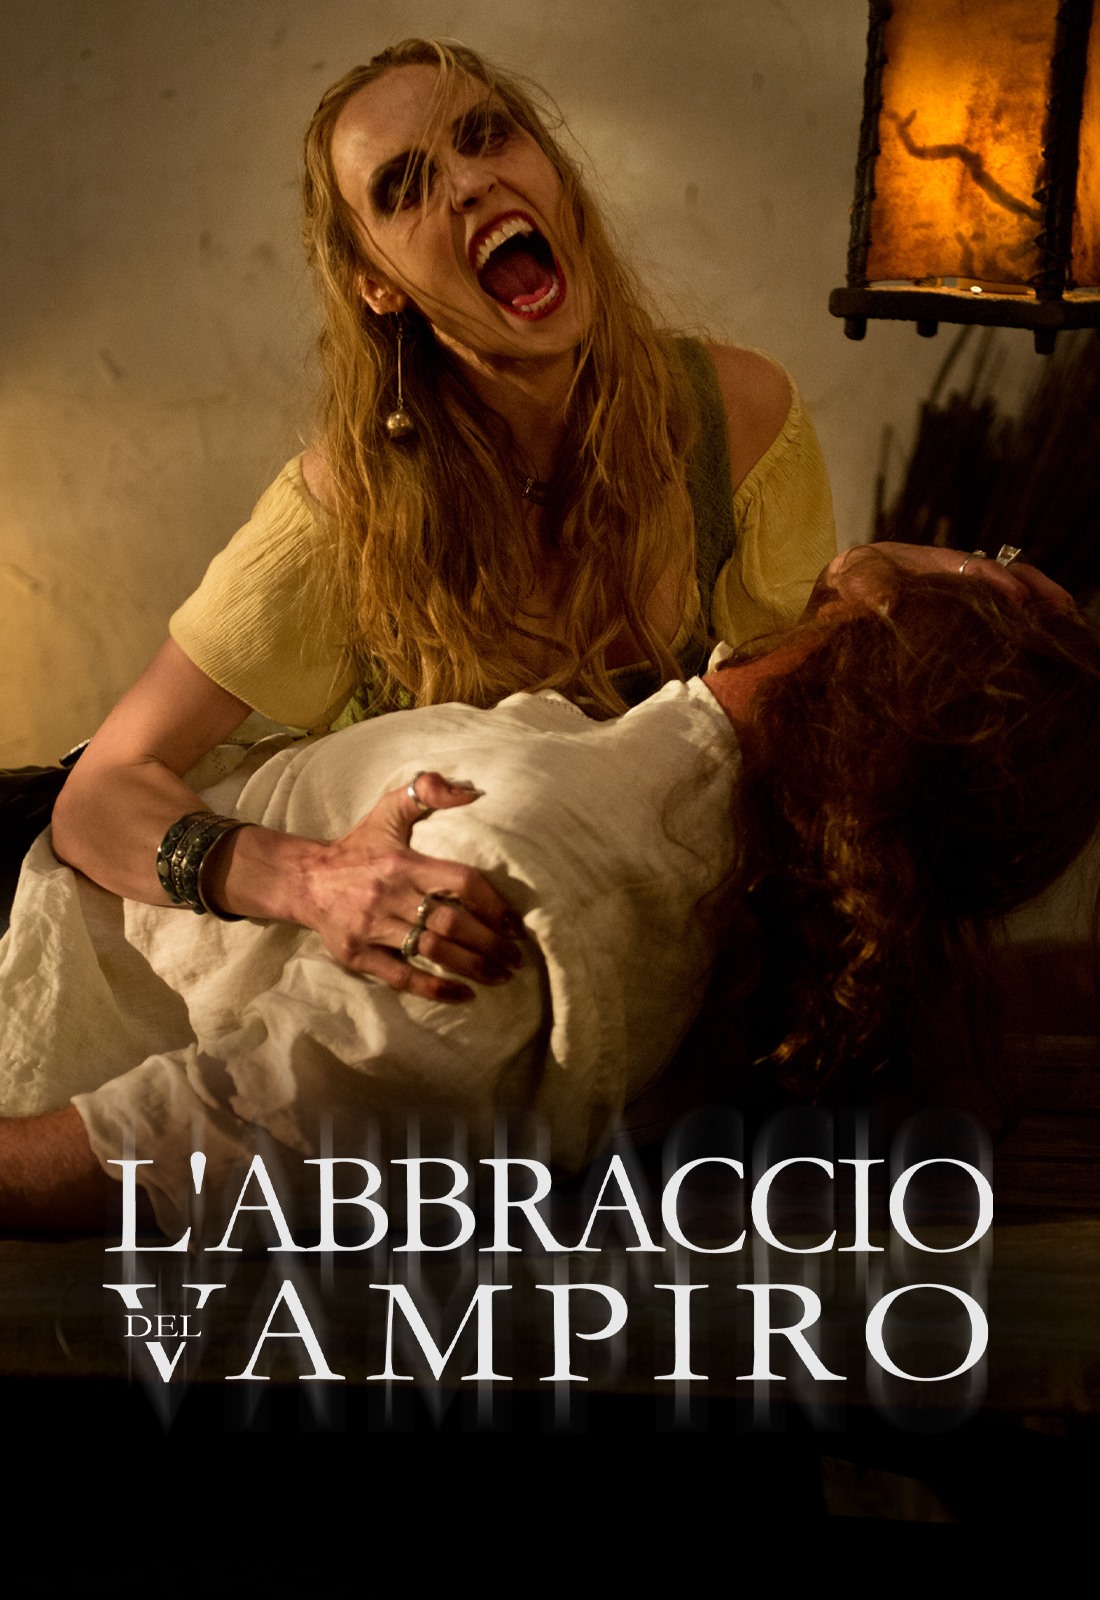 L’abbraccio del vampiro [HD] (2013)